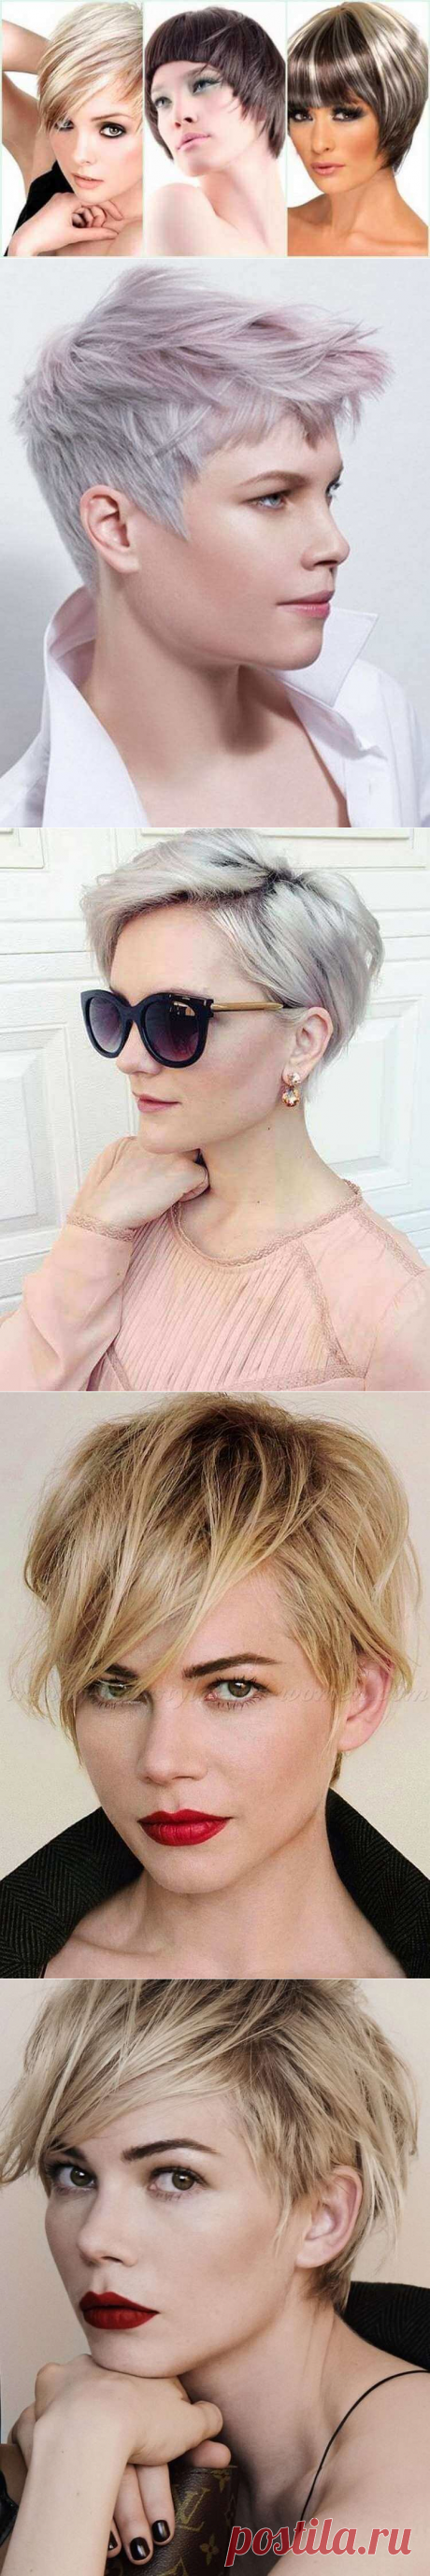 Модные оттенки и техники окрашивания на короткие волосы 2020 год | Чаровница и проказница